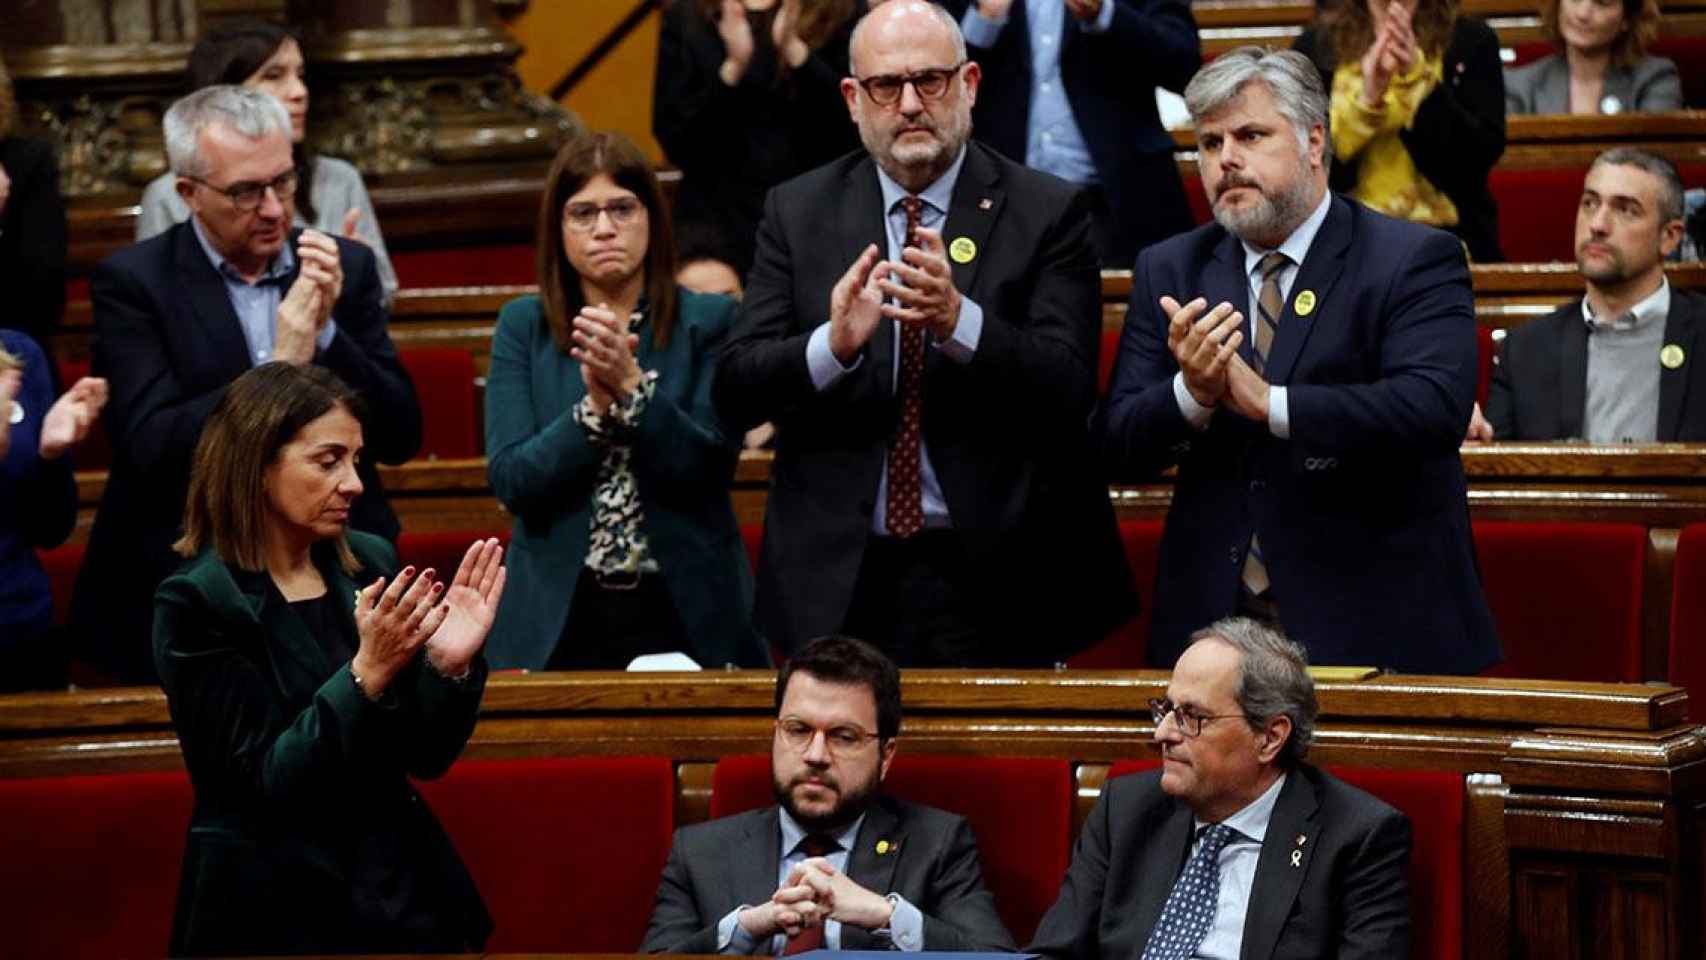 El presidente de la Generalitat, Quim Torra (d), es aplaudido por los miembros de su partido mientras que su vicepresidente, Pere Aragonés (i), y los diputados de ERC permanecen sentados / EFE